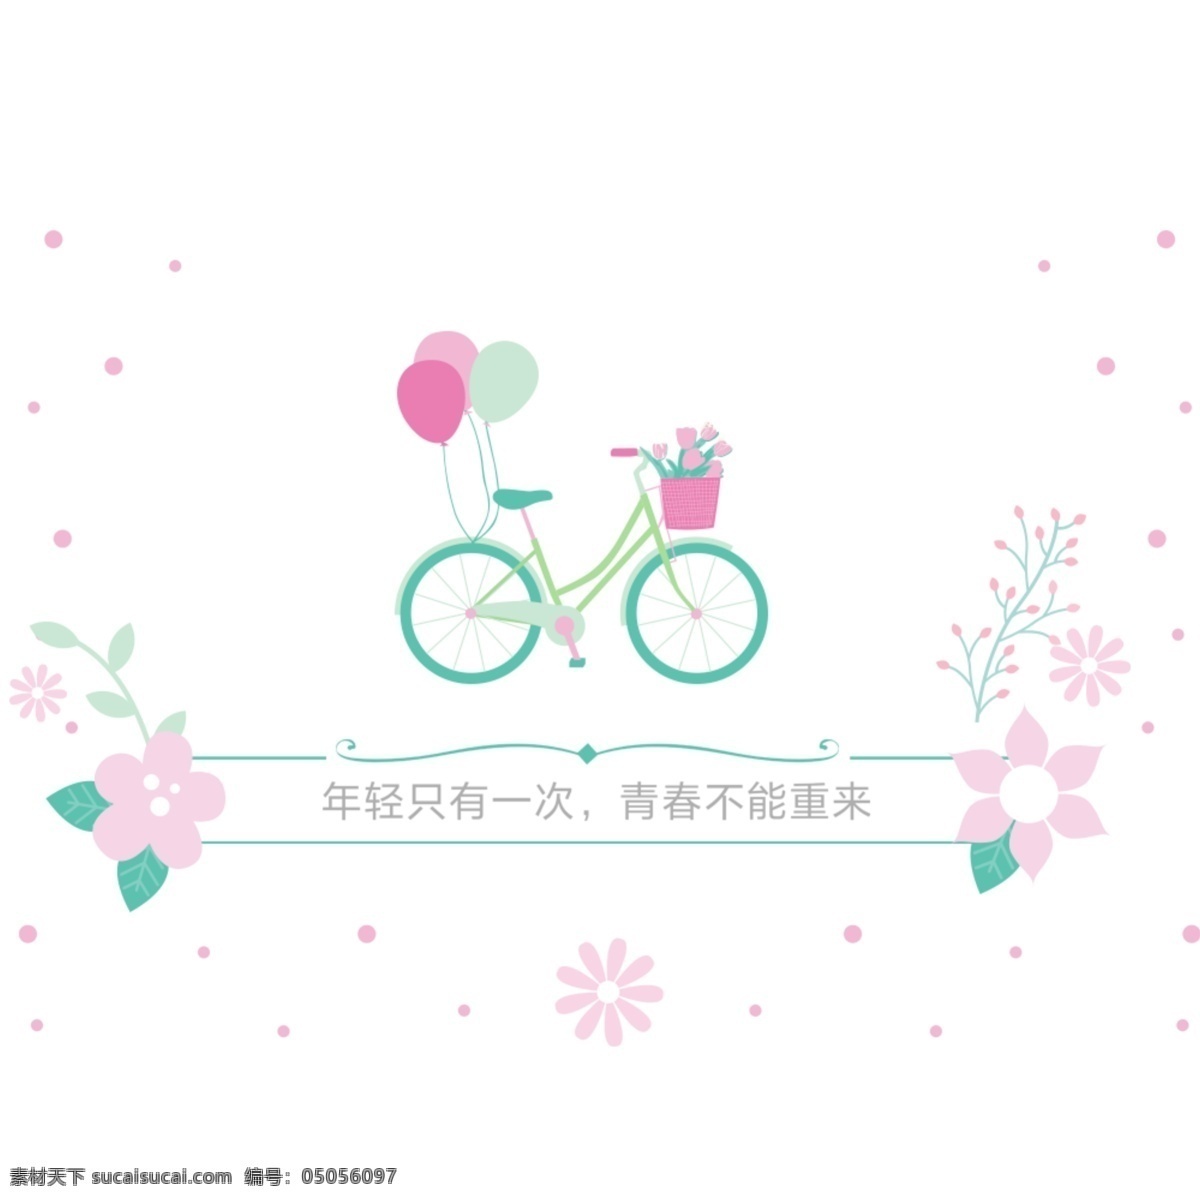 自行车花朵 自行车 花朵 清新 气球